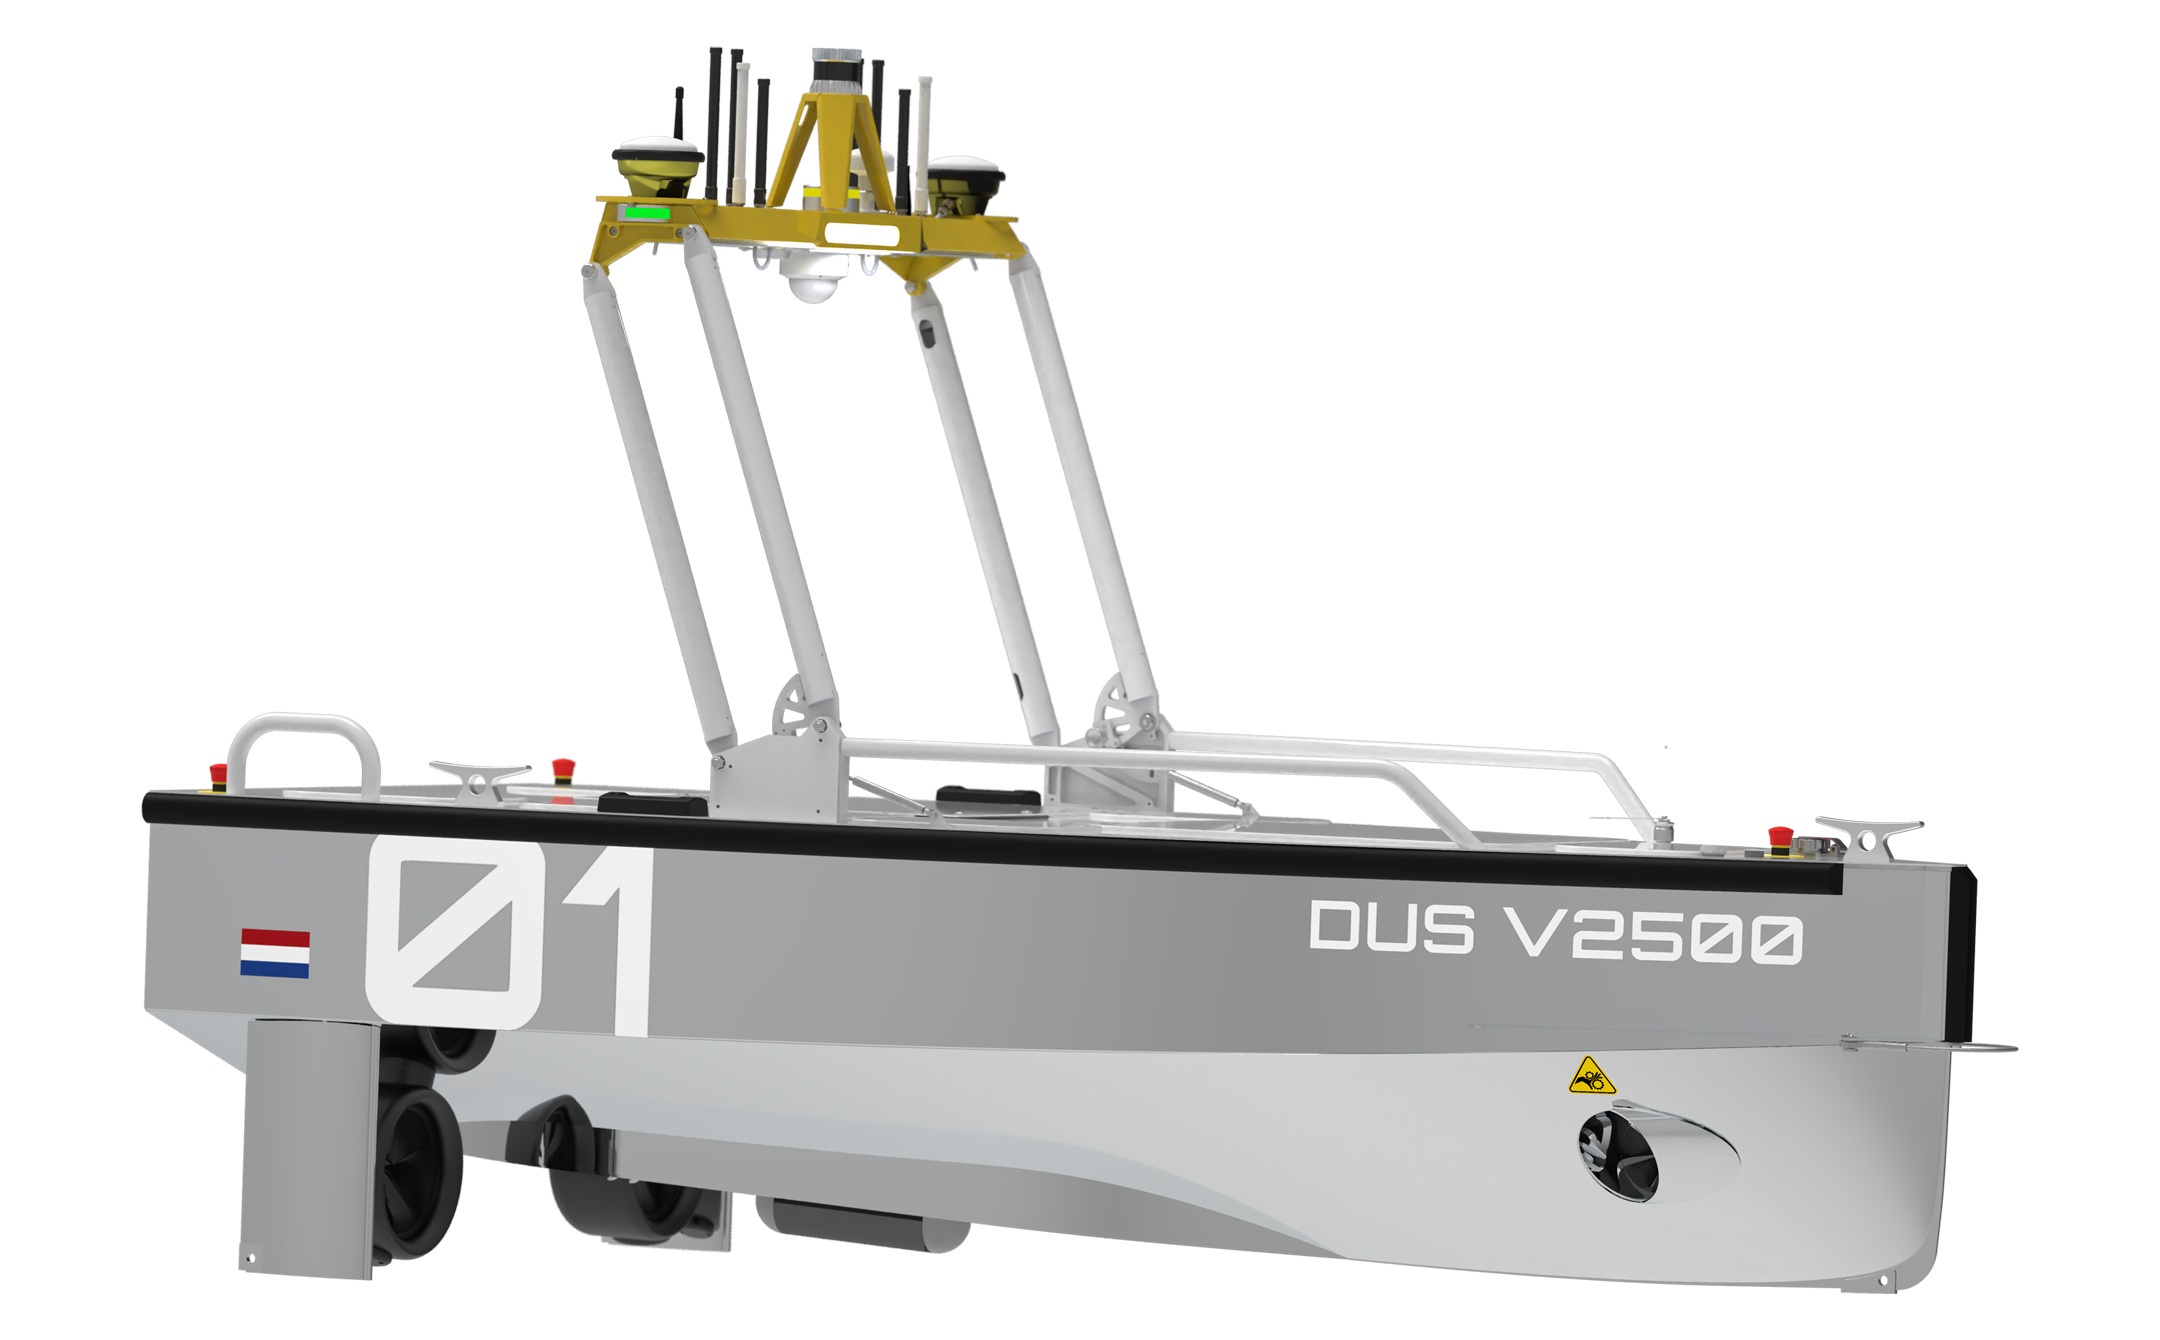 autonomous-survery-vehicle-offshore